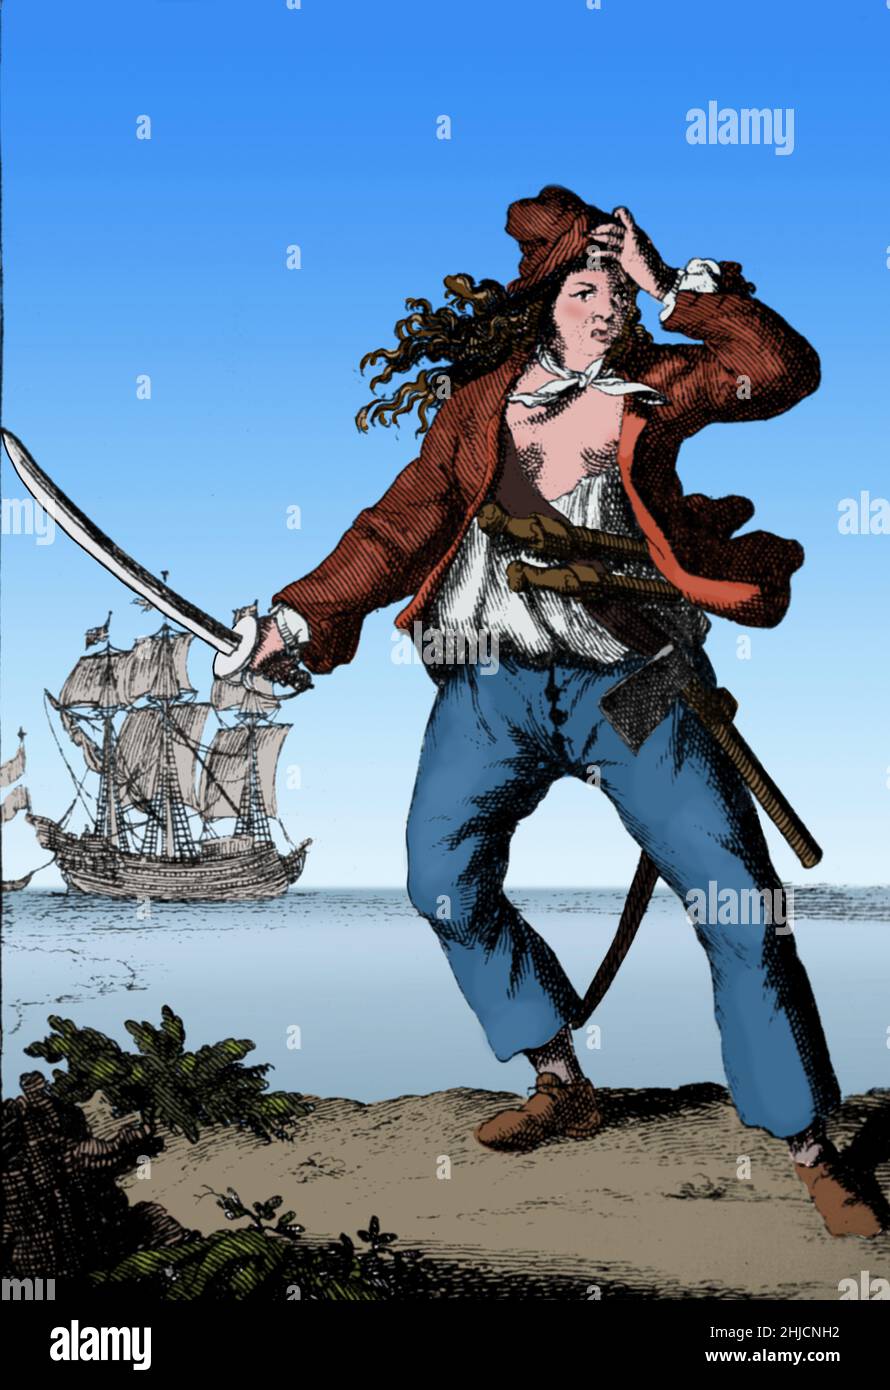 Mary Read AKA Mark Read (1685 - 1721) était un pirate anglais.Elle a commencé à s'habiller comme un garçon par sa mère afin de recevoir de l'argent d'héritage et ensuite de rejoindre l'armée britannique.En 1720, elle rencontre Jack Rackham et rejoint son équipage, s'habillant comme un homme aux côtés d'Anne Bonny.Rackham et son équipage ont été arrêtés.Bonny et Read étaient enceintes et ont reçu des peines différées, mais Read est mort d'une fièvre.Howard Pyle's Book of Pirates, 1921 (culture et nettoyage). Banque D'Images